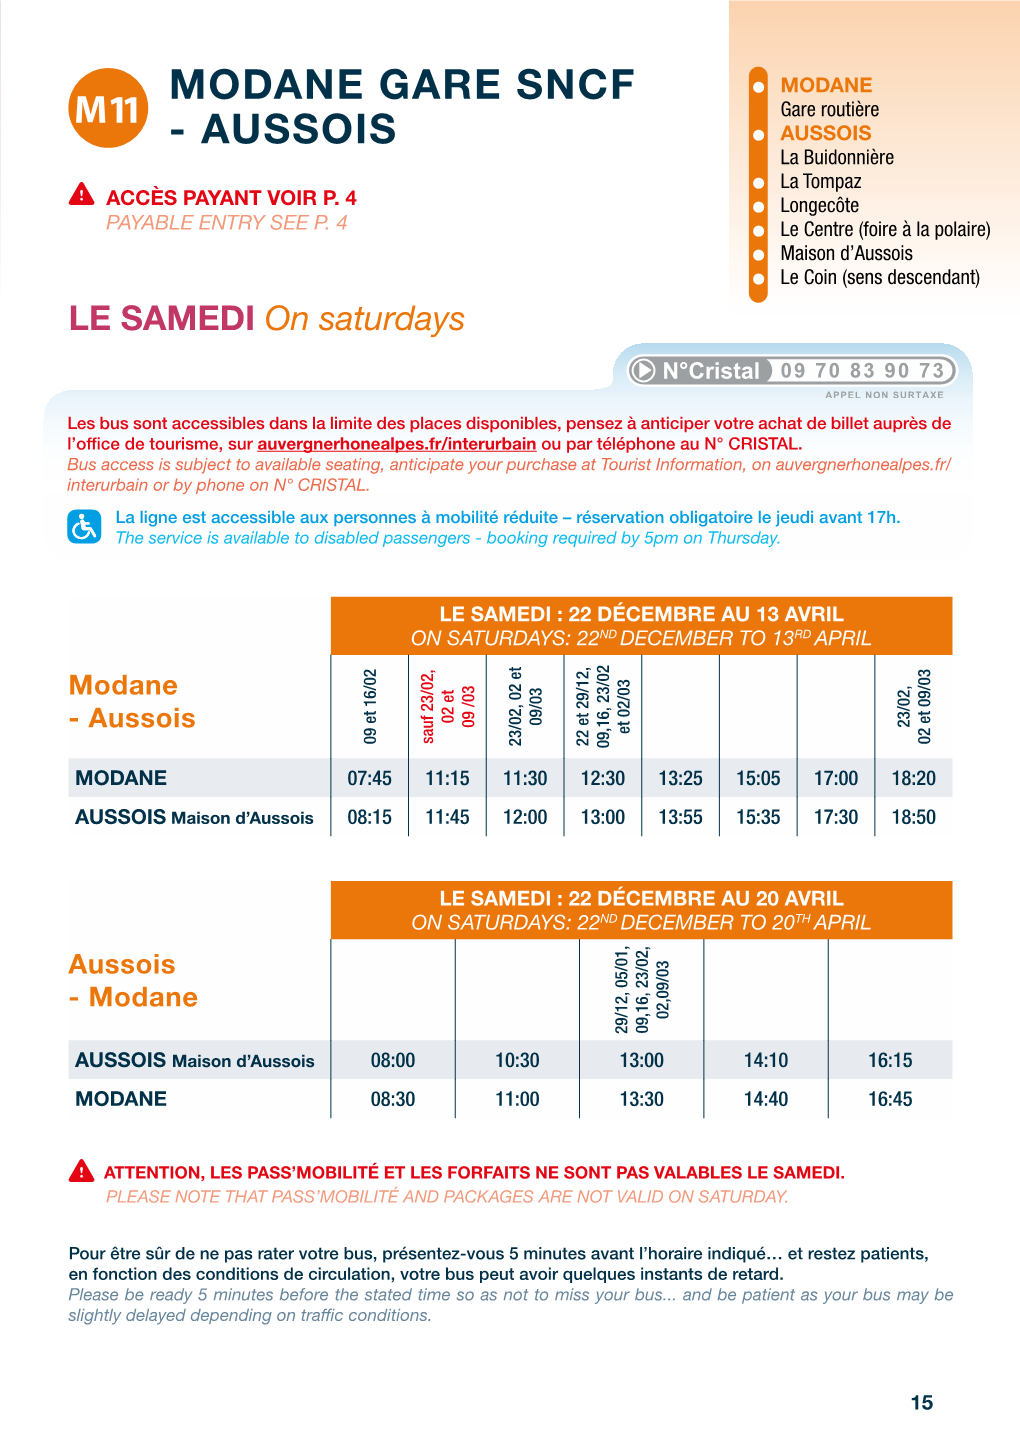 MODANE GARE SNCF • MODANE M11 Gare Routière - AUSSOIS • AUSSOIS La Buidonnière La Tompaz ACCÈS PAYANT VOIR P